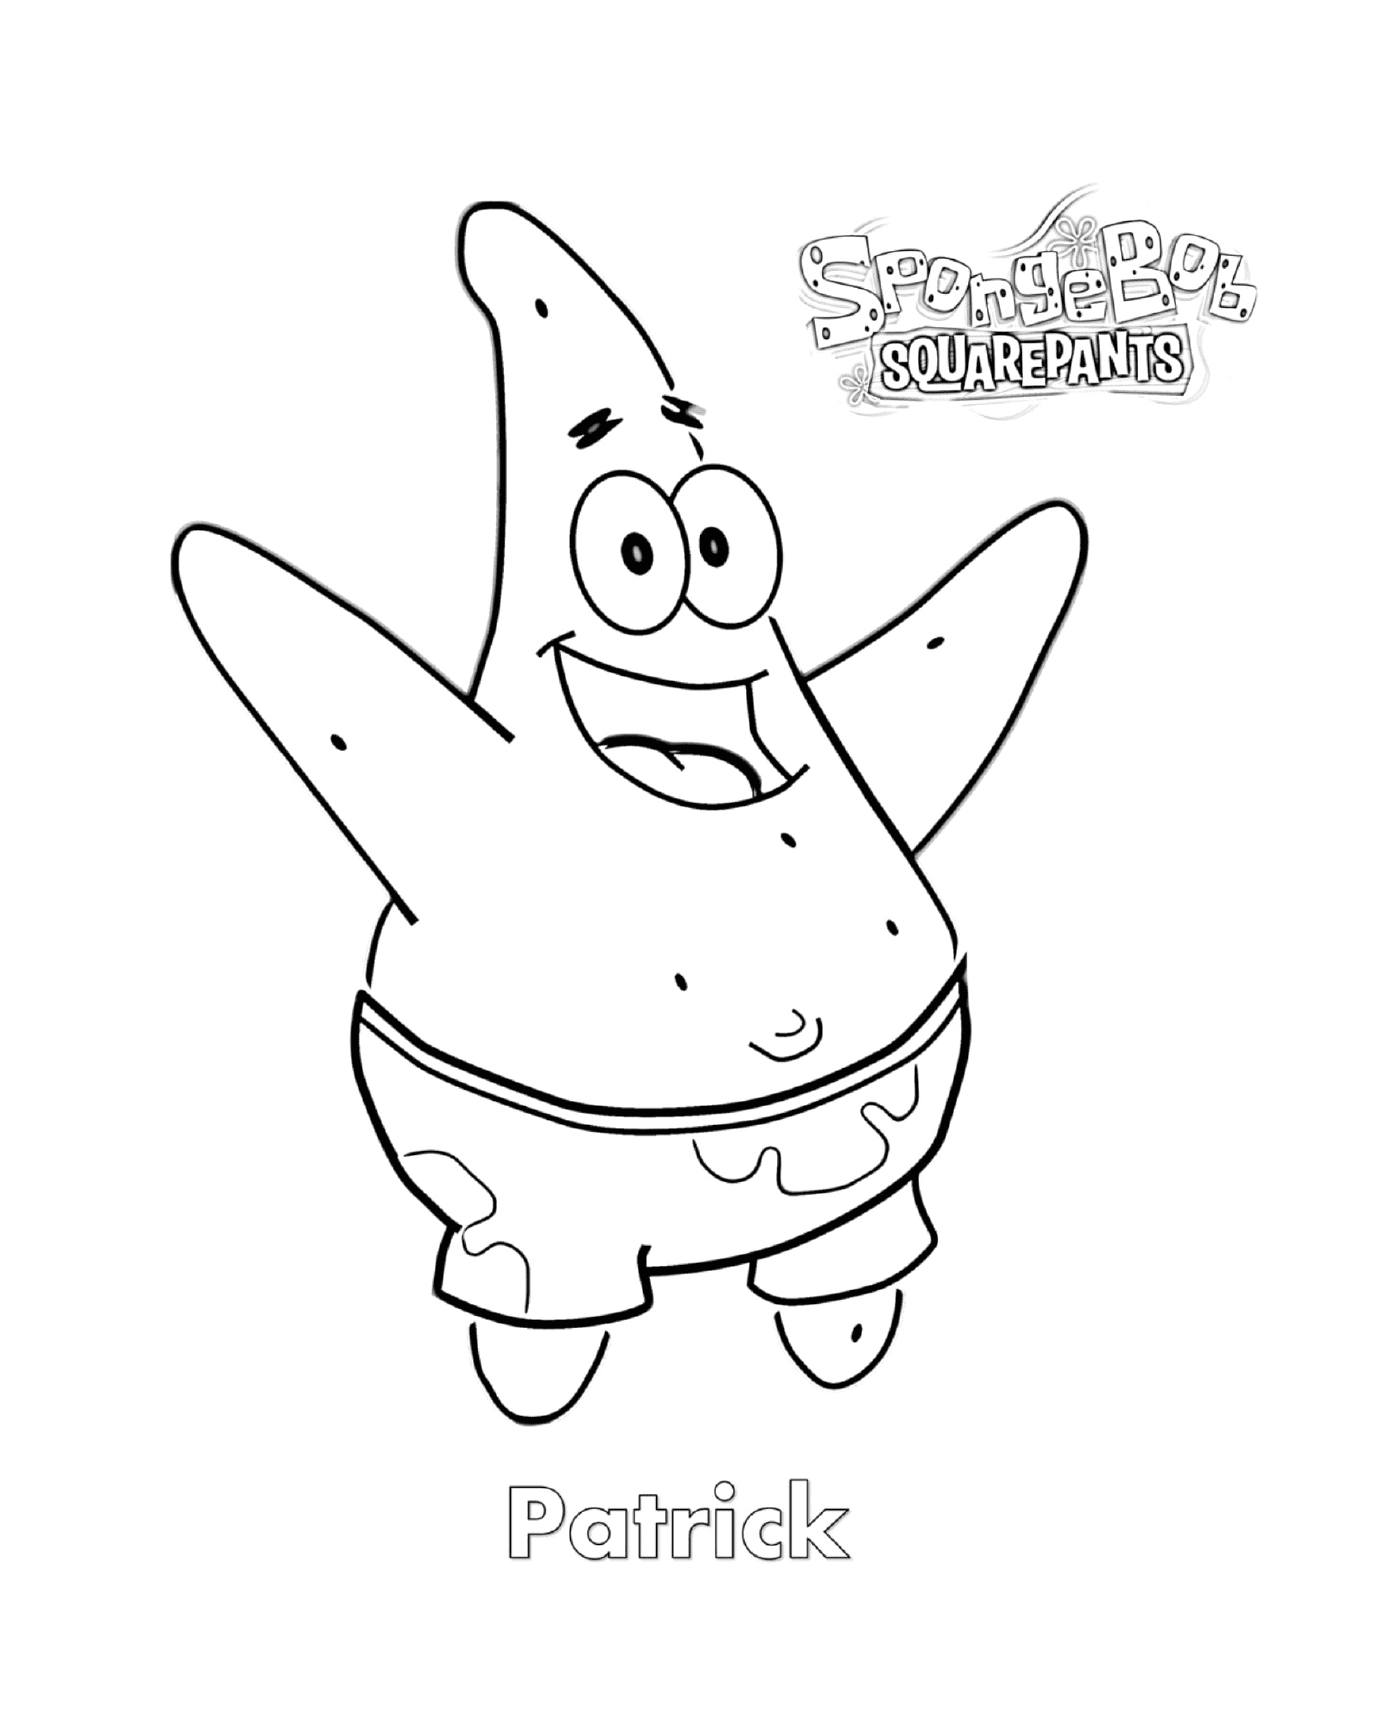  Patrick身材好,是海绵宝宝的人物 